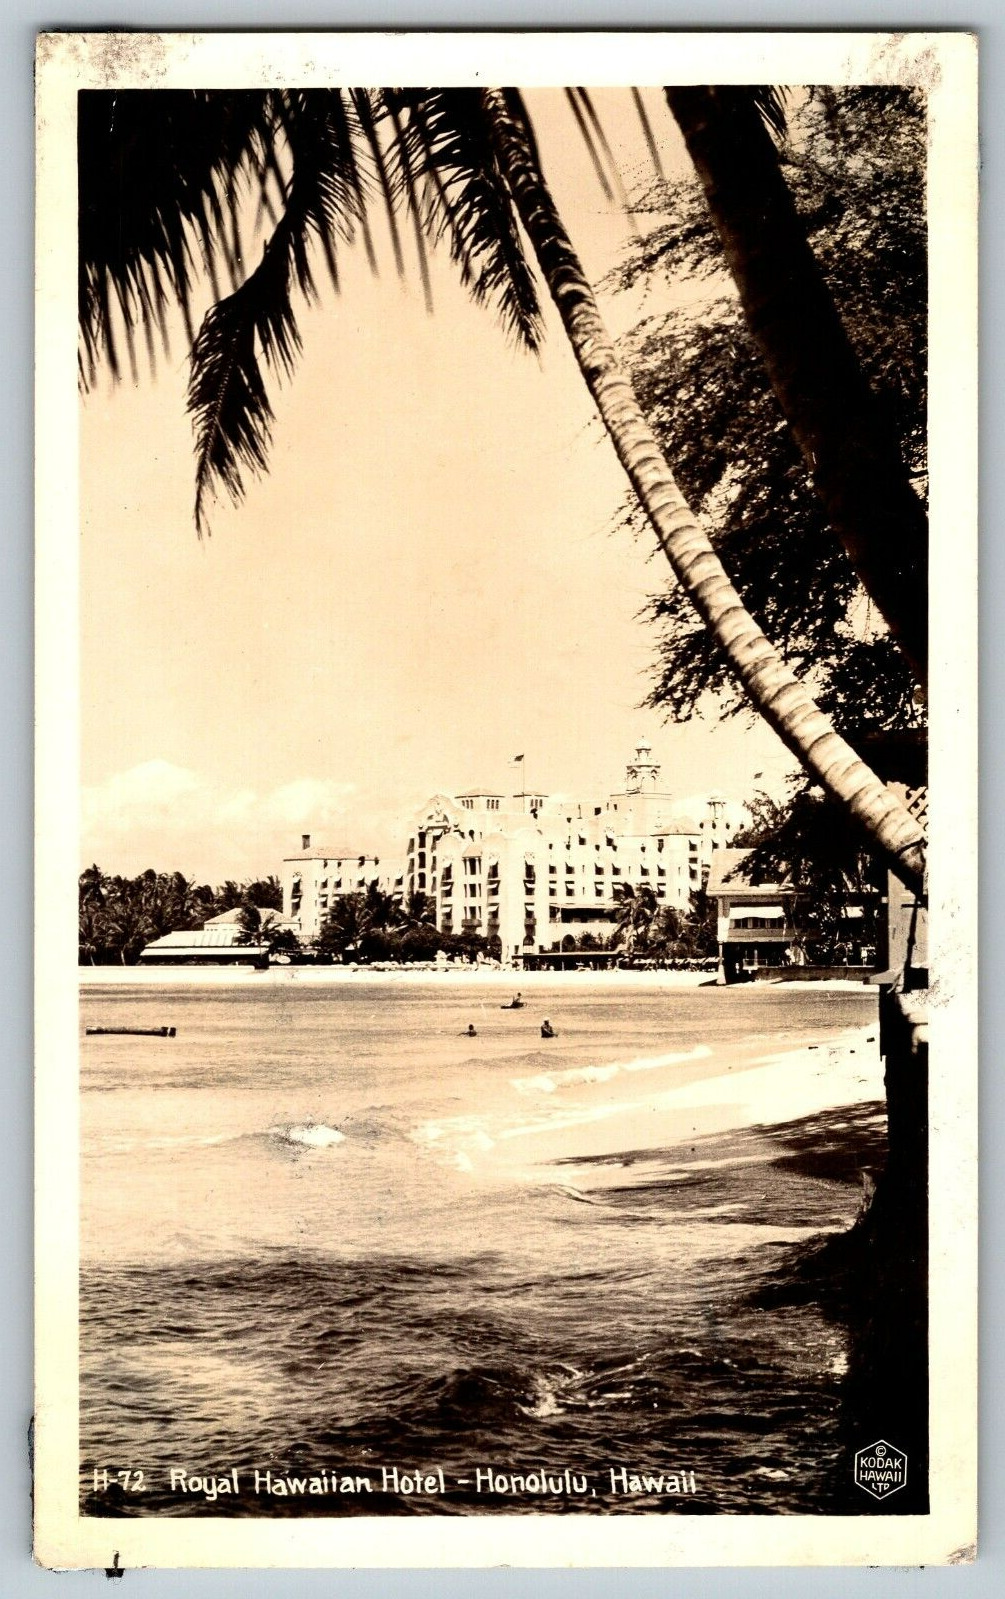 RPPC Vintage Postcard - Royal Hawaiian Hotel-Honolulu Hawaii - Real Photo